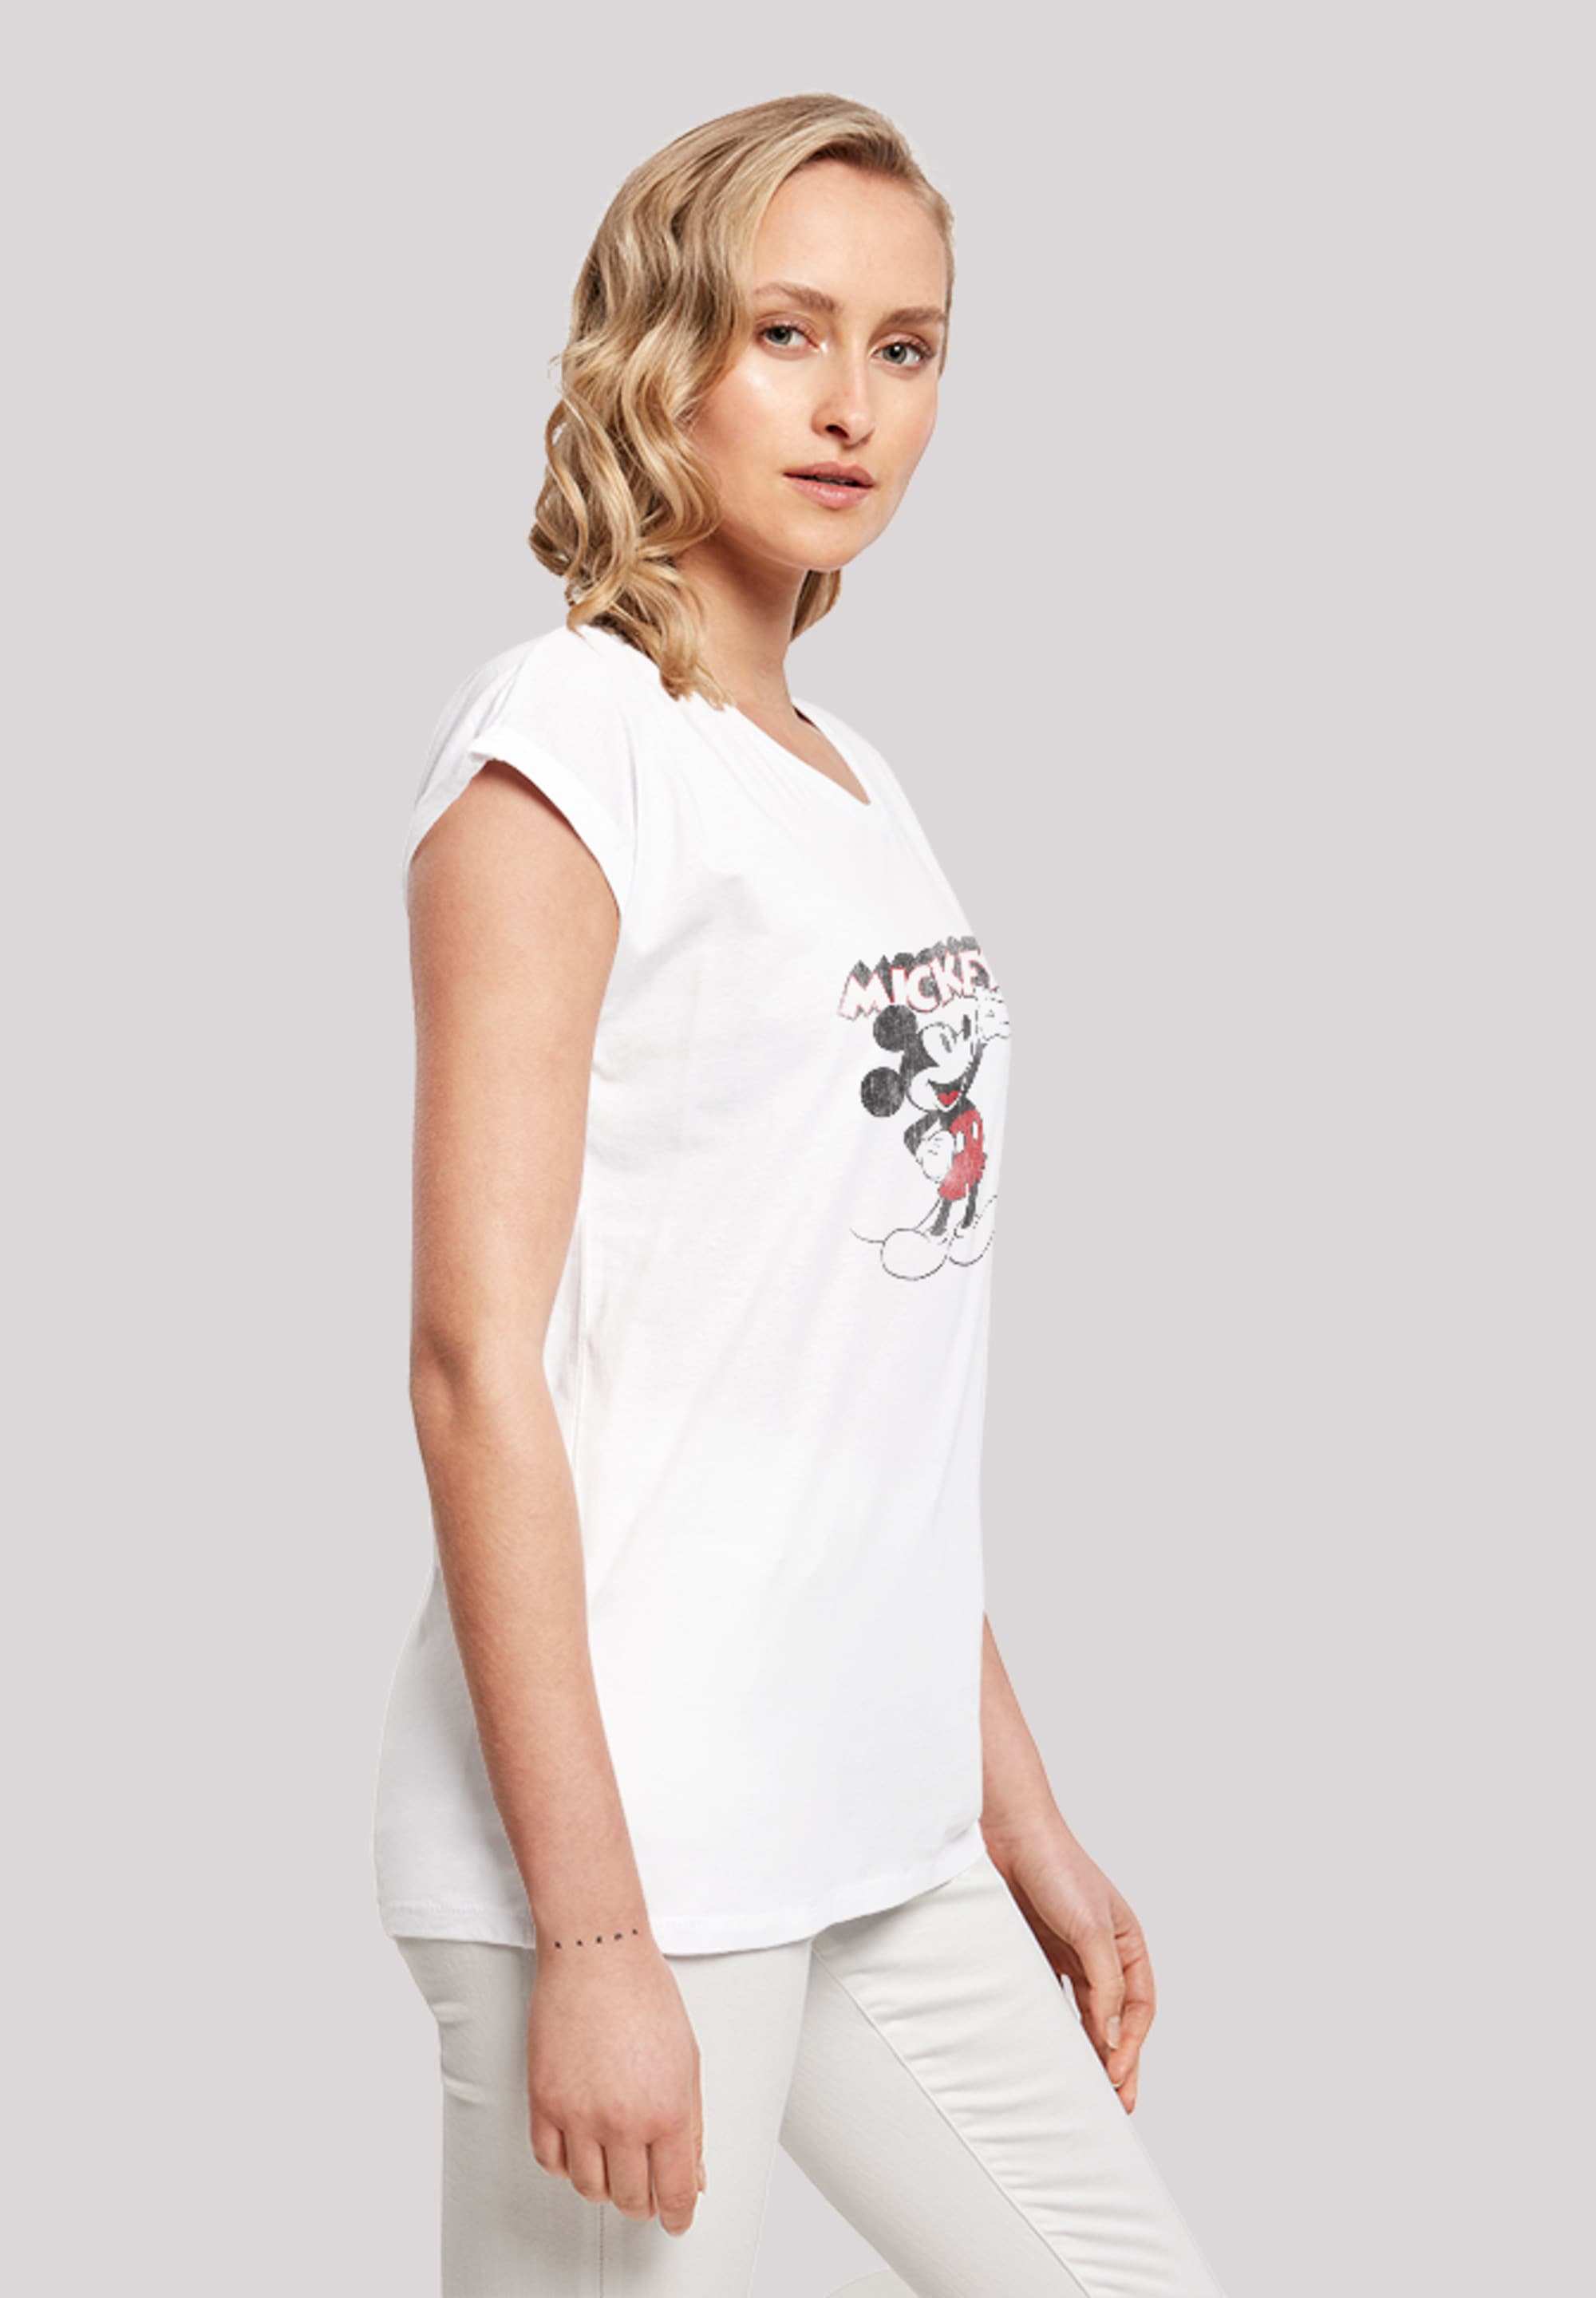 T-Shirt Maus«, Micky Presents Ärmel,Bedruckt walking Classic Mouse Damen,Premium I\'m shoppen Merch,Regular-Fit,Kurze »Disney | Mickey F4NT4STIC